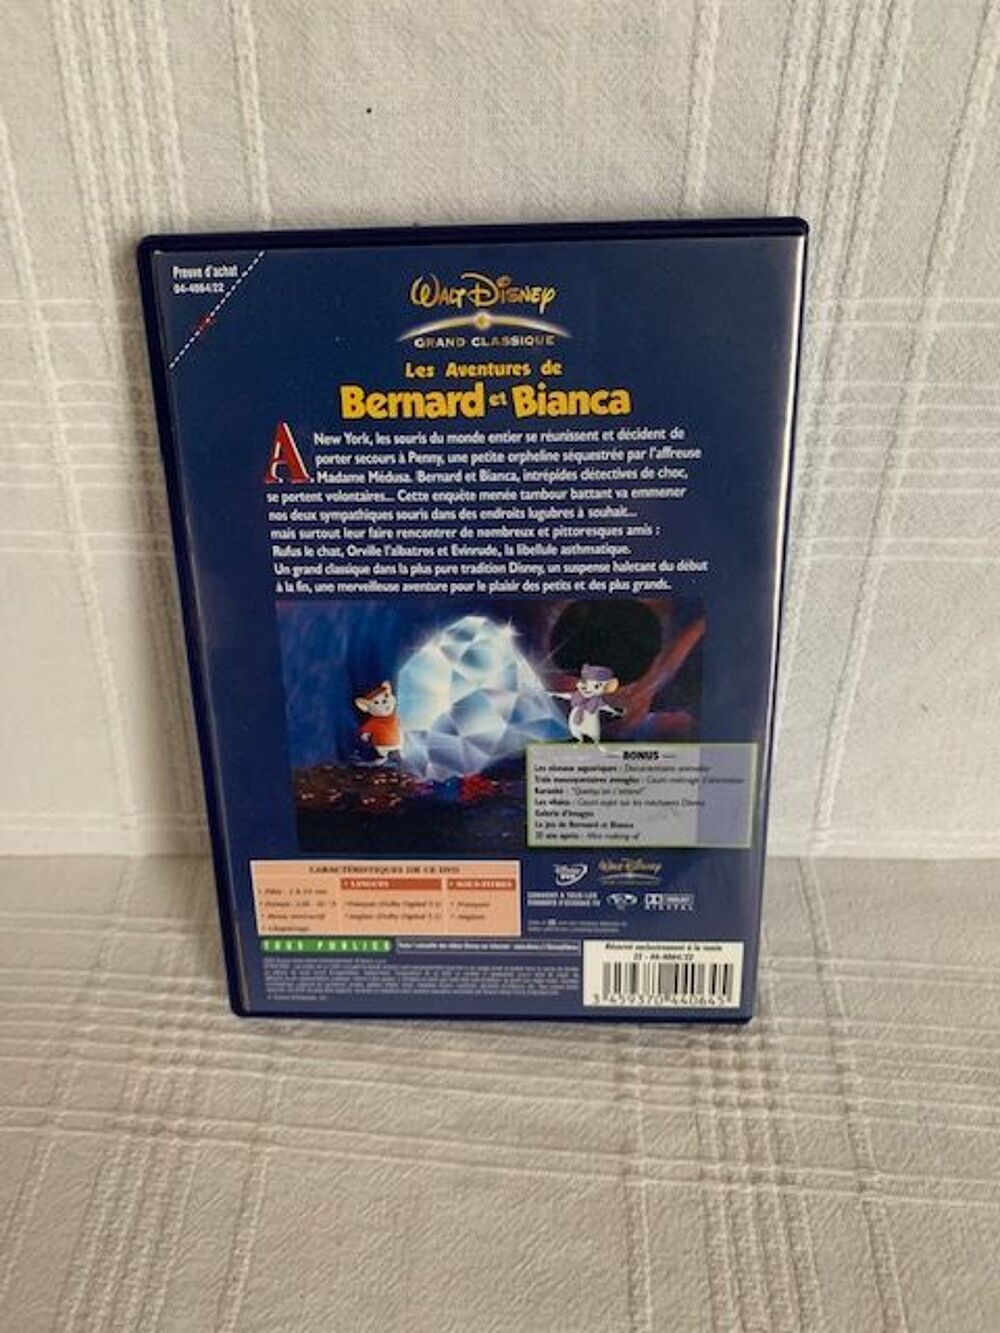 F15 	9/01/23
Les Aventures de Bernard et Bianca	 DVD et blu-ray